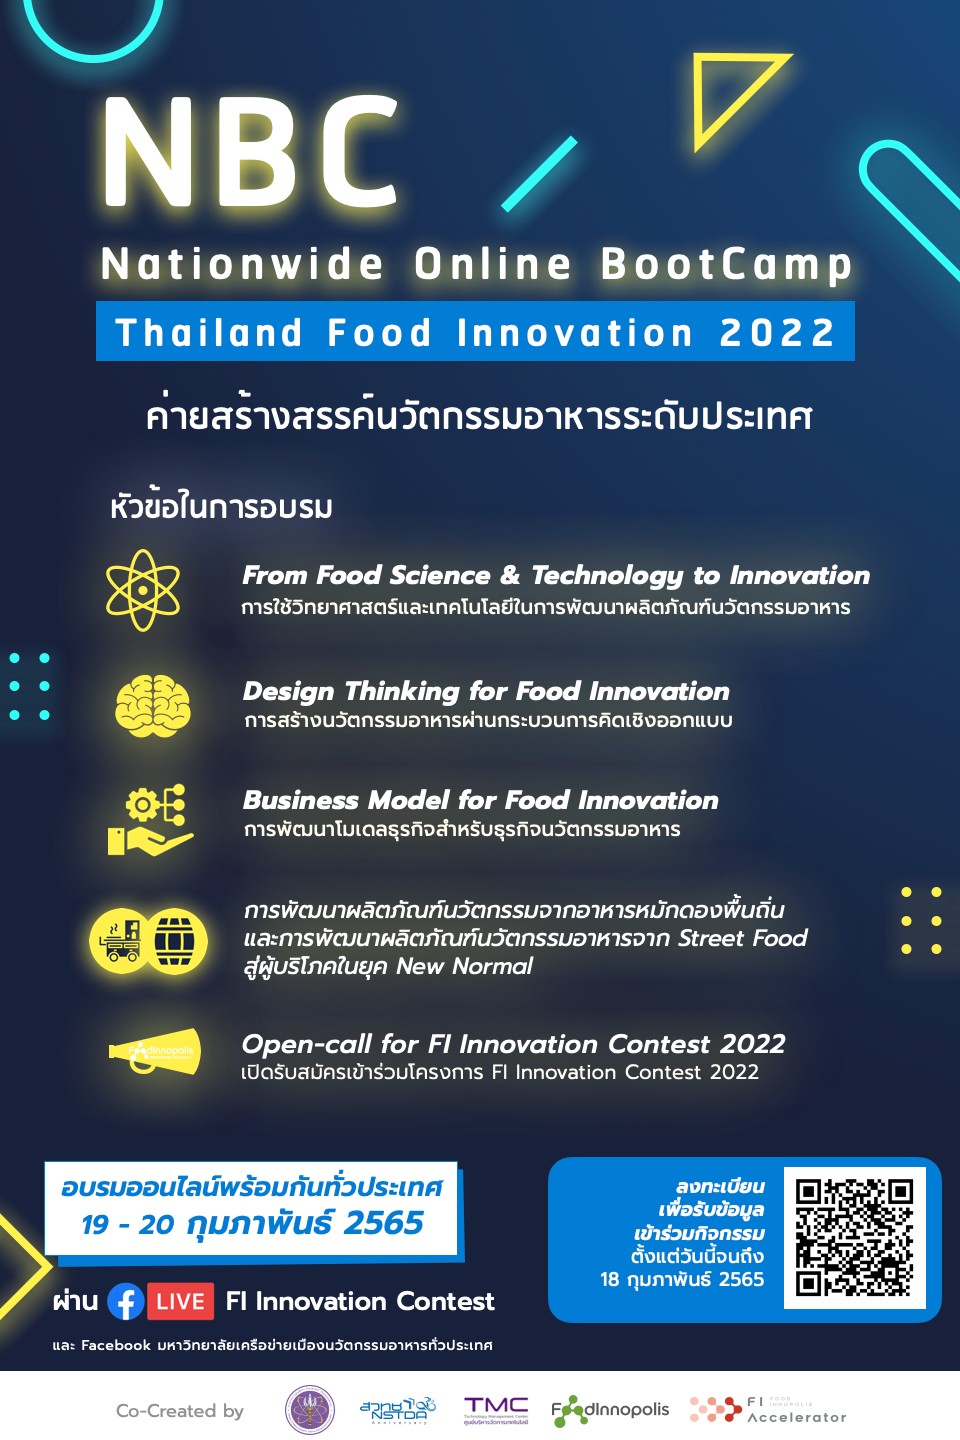 ขอเชิญชวนเข้าร่วมค่ายสร้างสรรค์นวัตกรรมอาหารระดับประเทศ (ออนไลน์) Thailand Food Innovation Nationwide Online BootCamp 2022